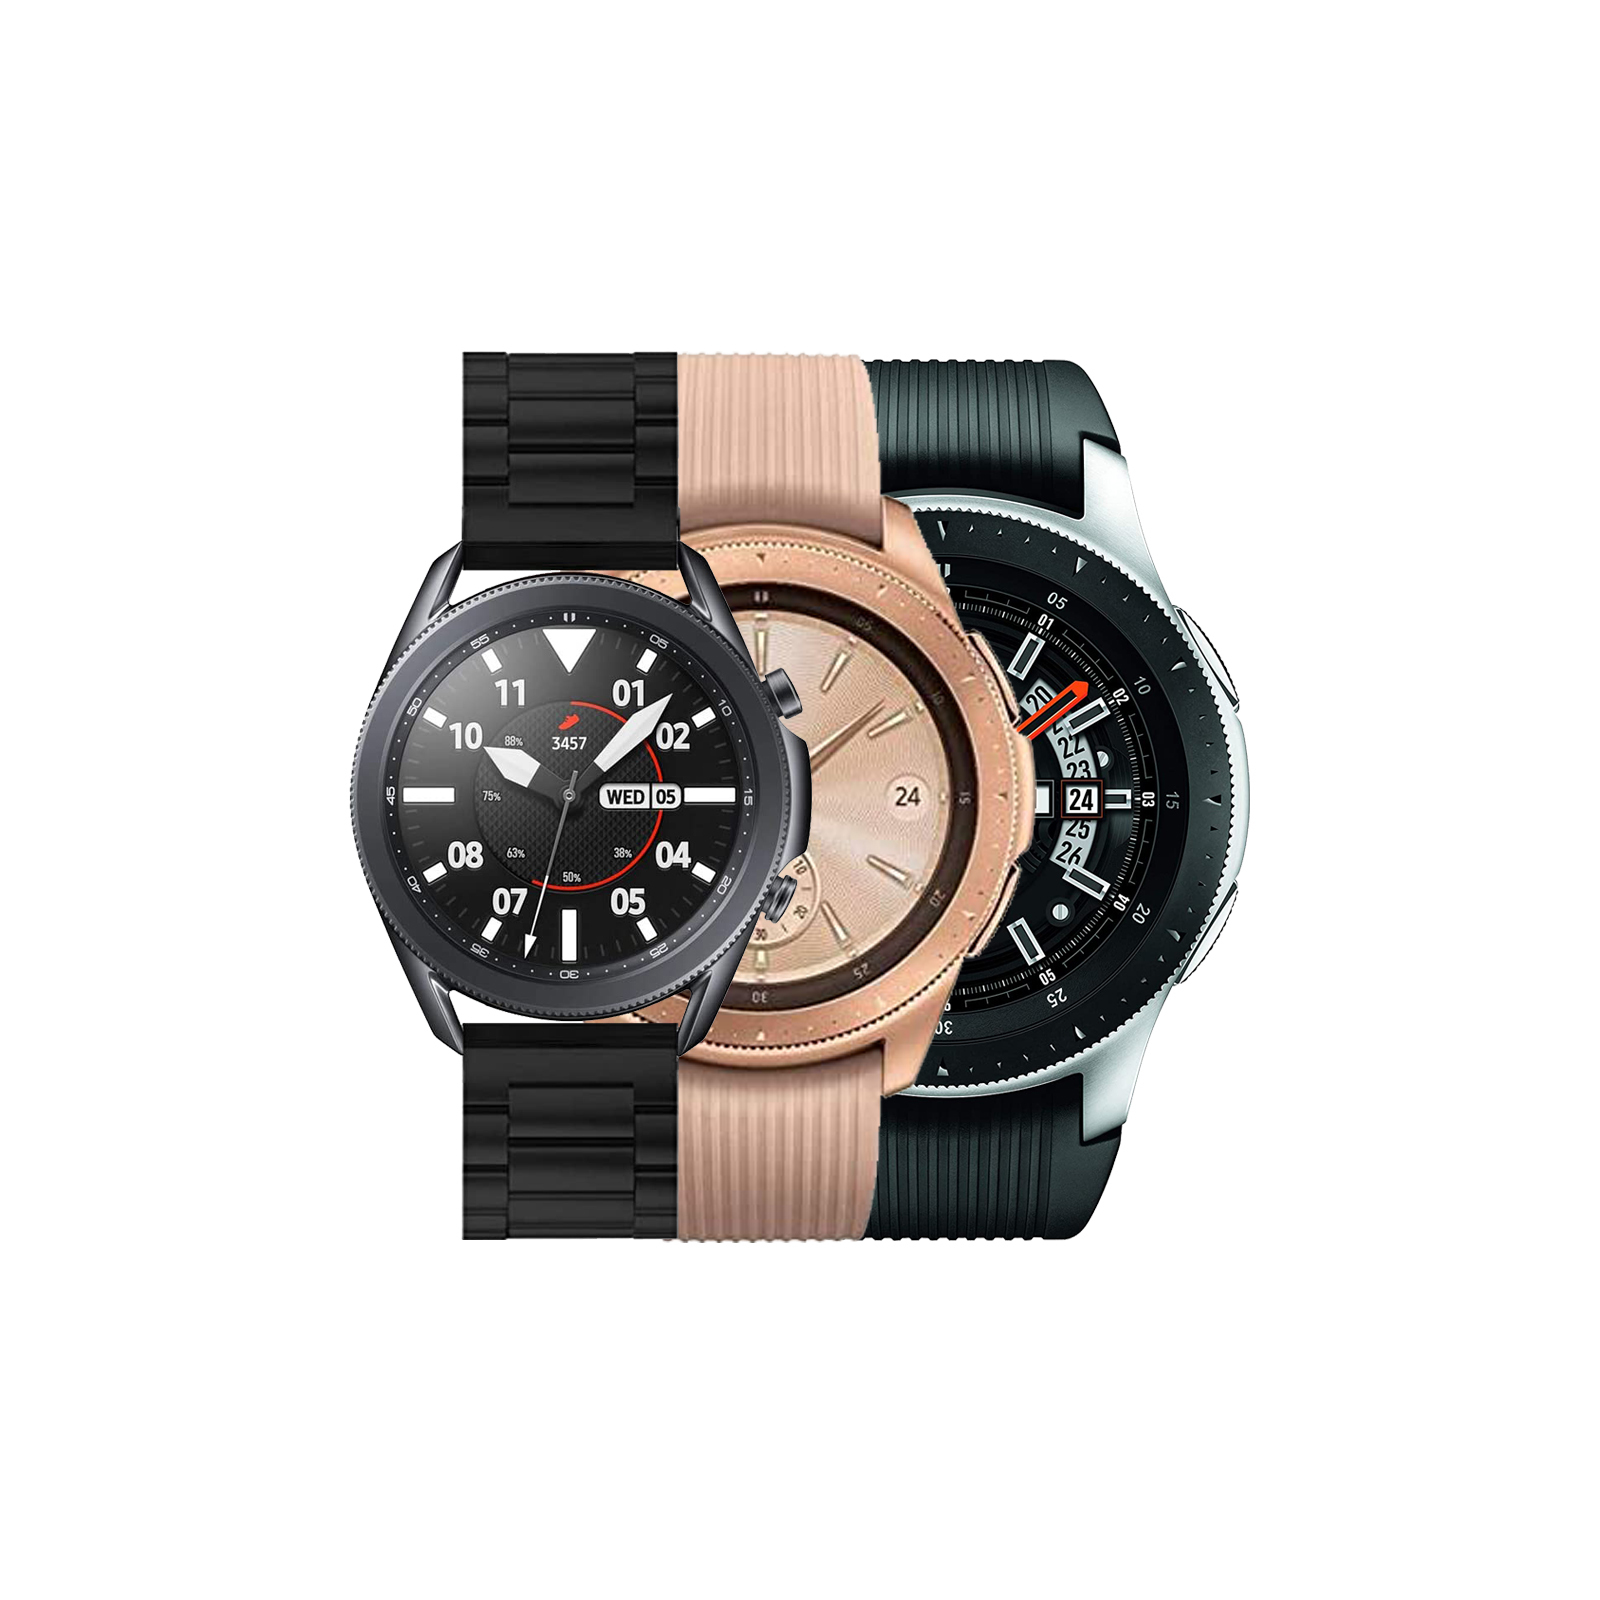 Samsung Galaxy Watch 4G 46mm - As New